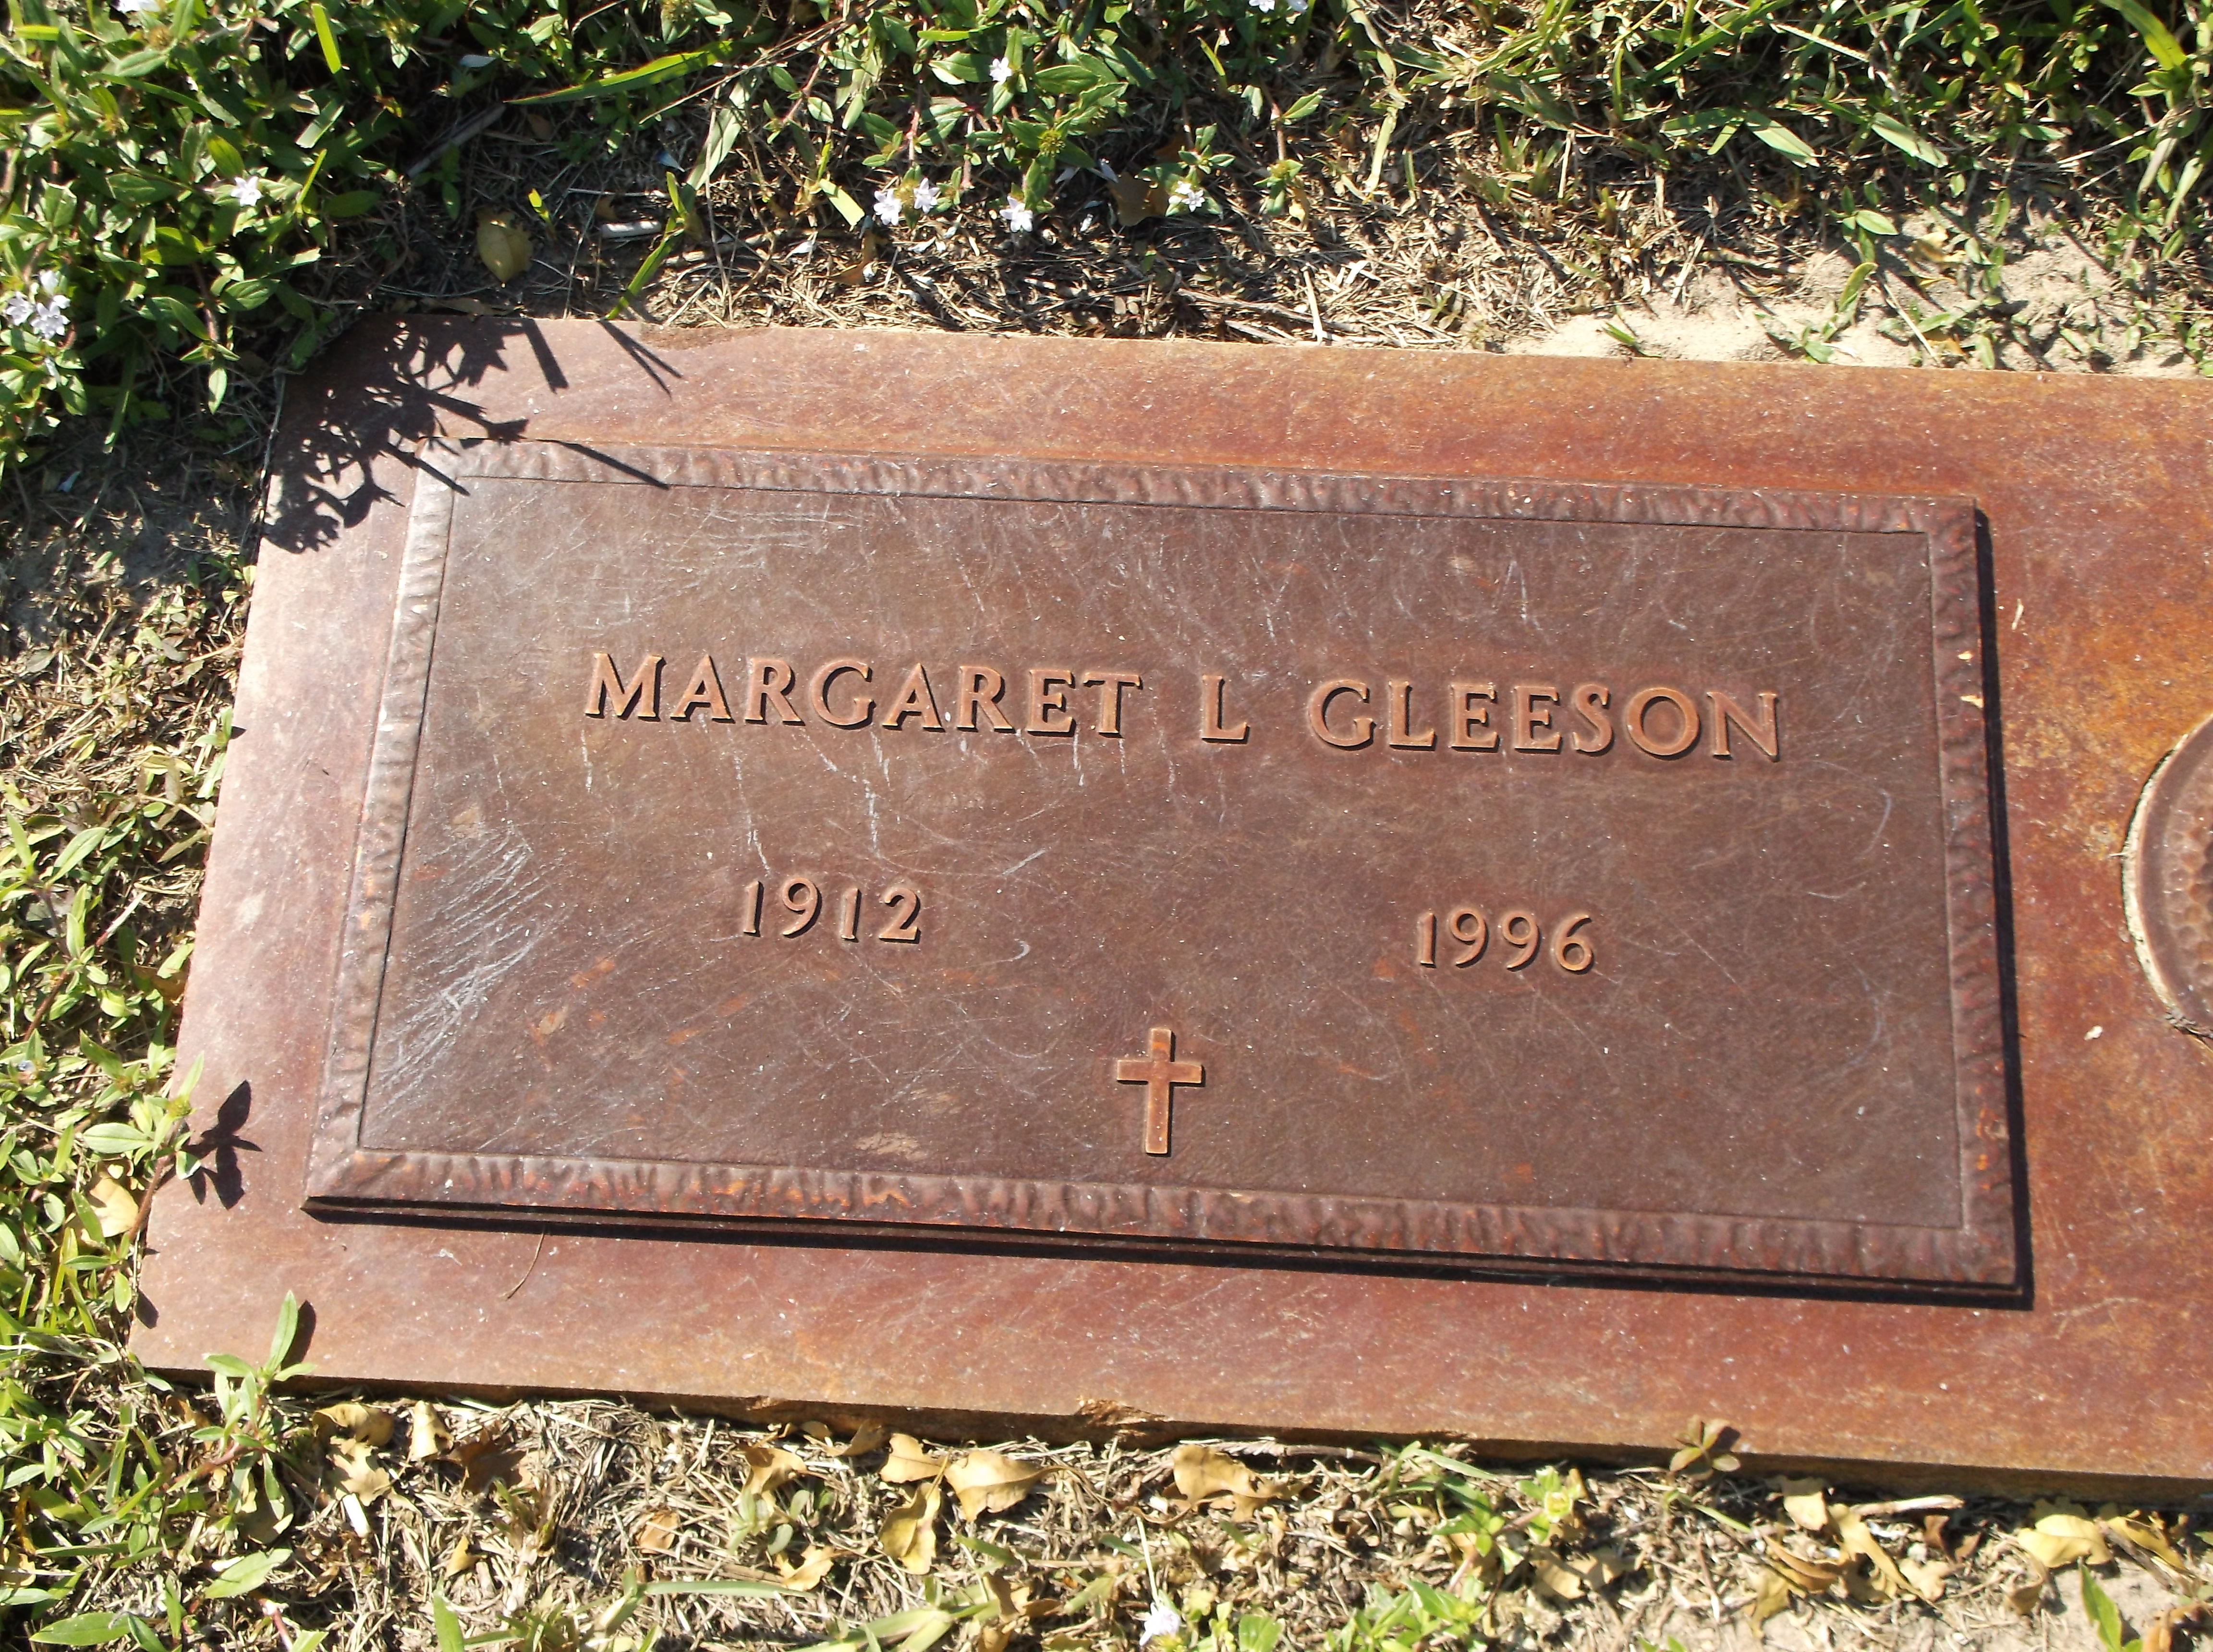 Margaret L Gleeson